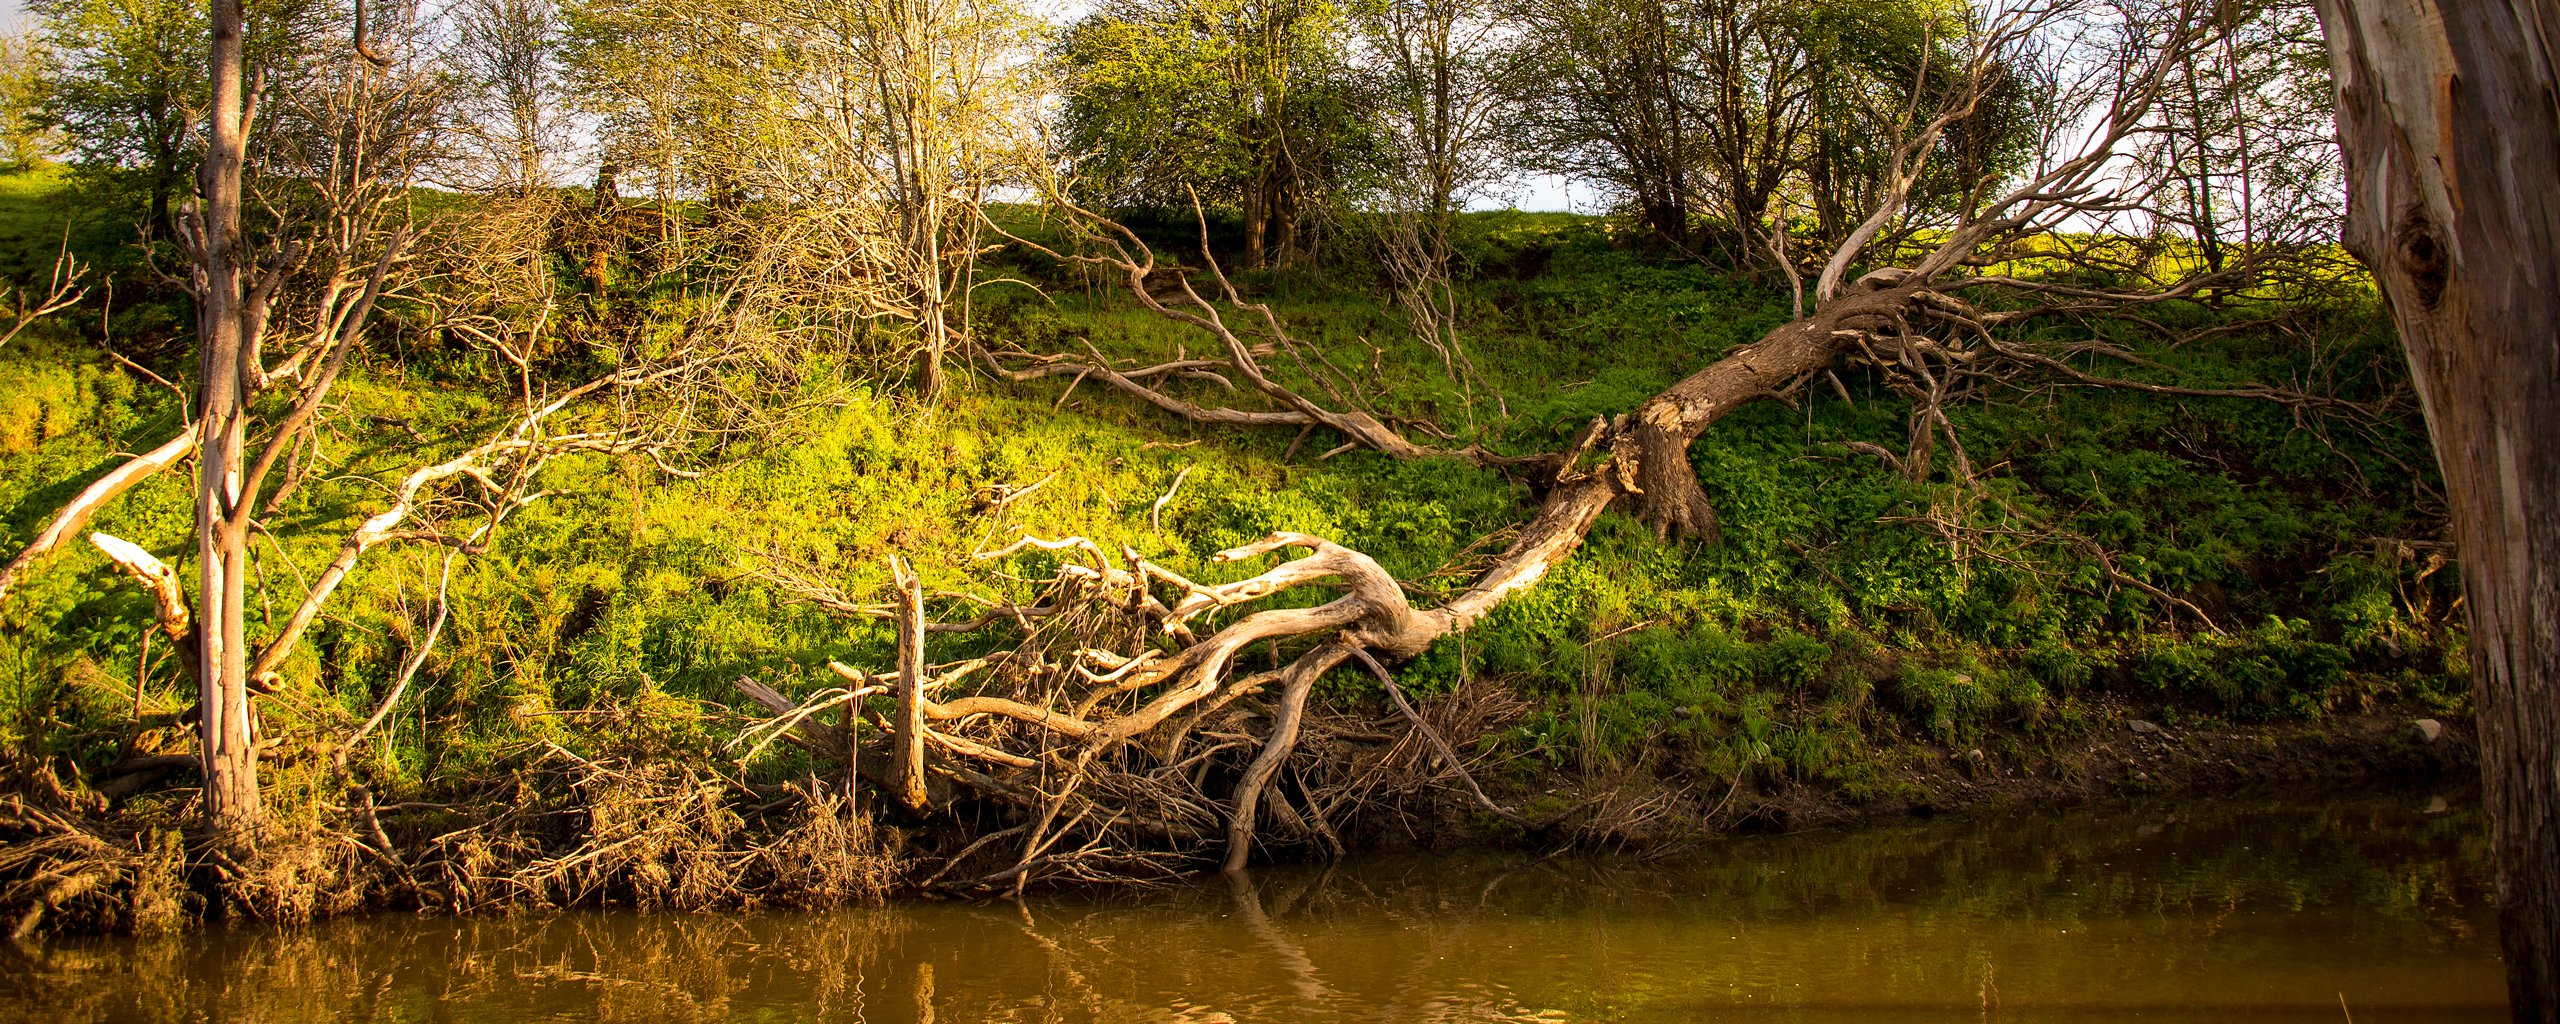 Log on a river bank